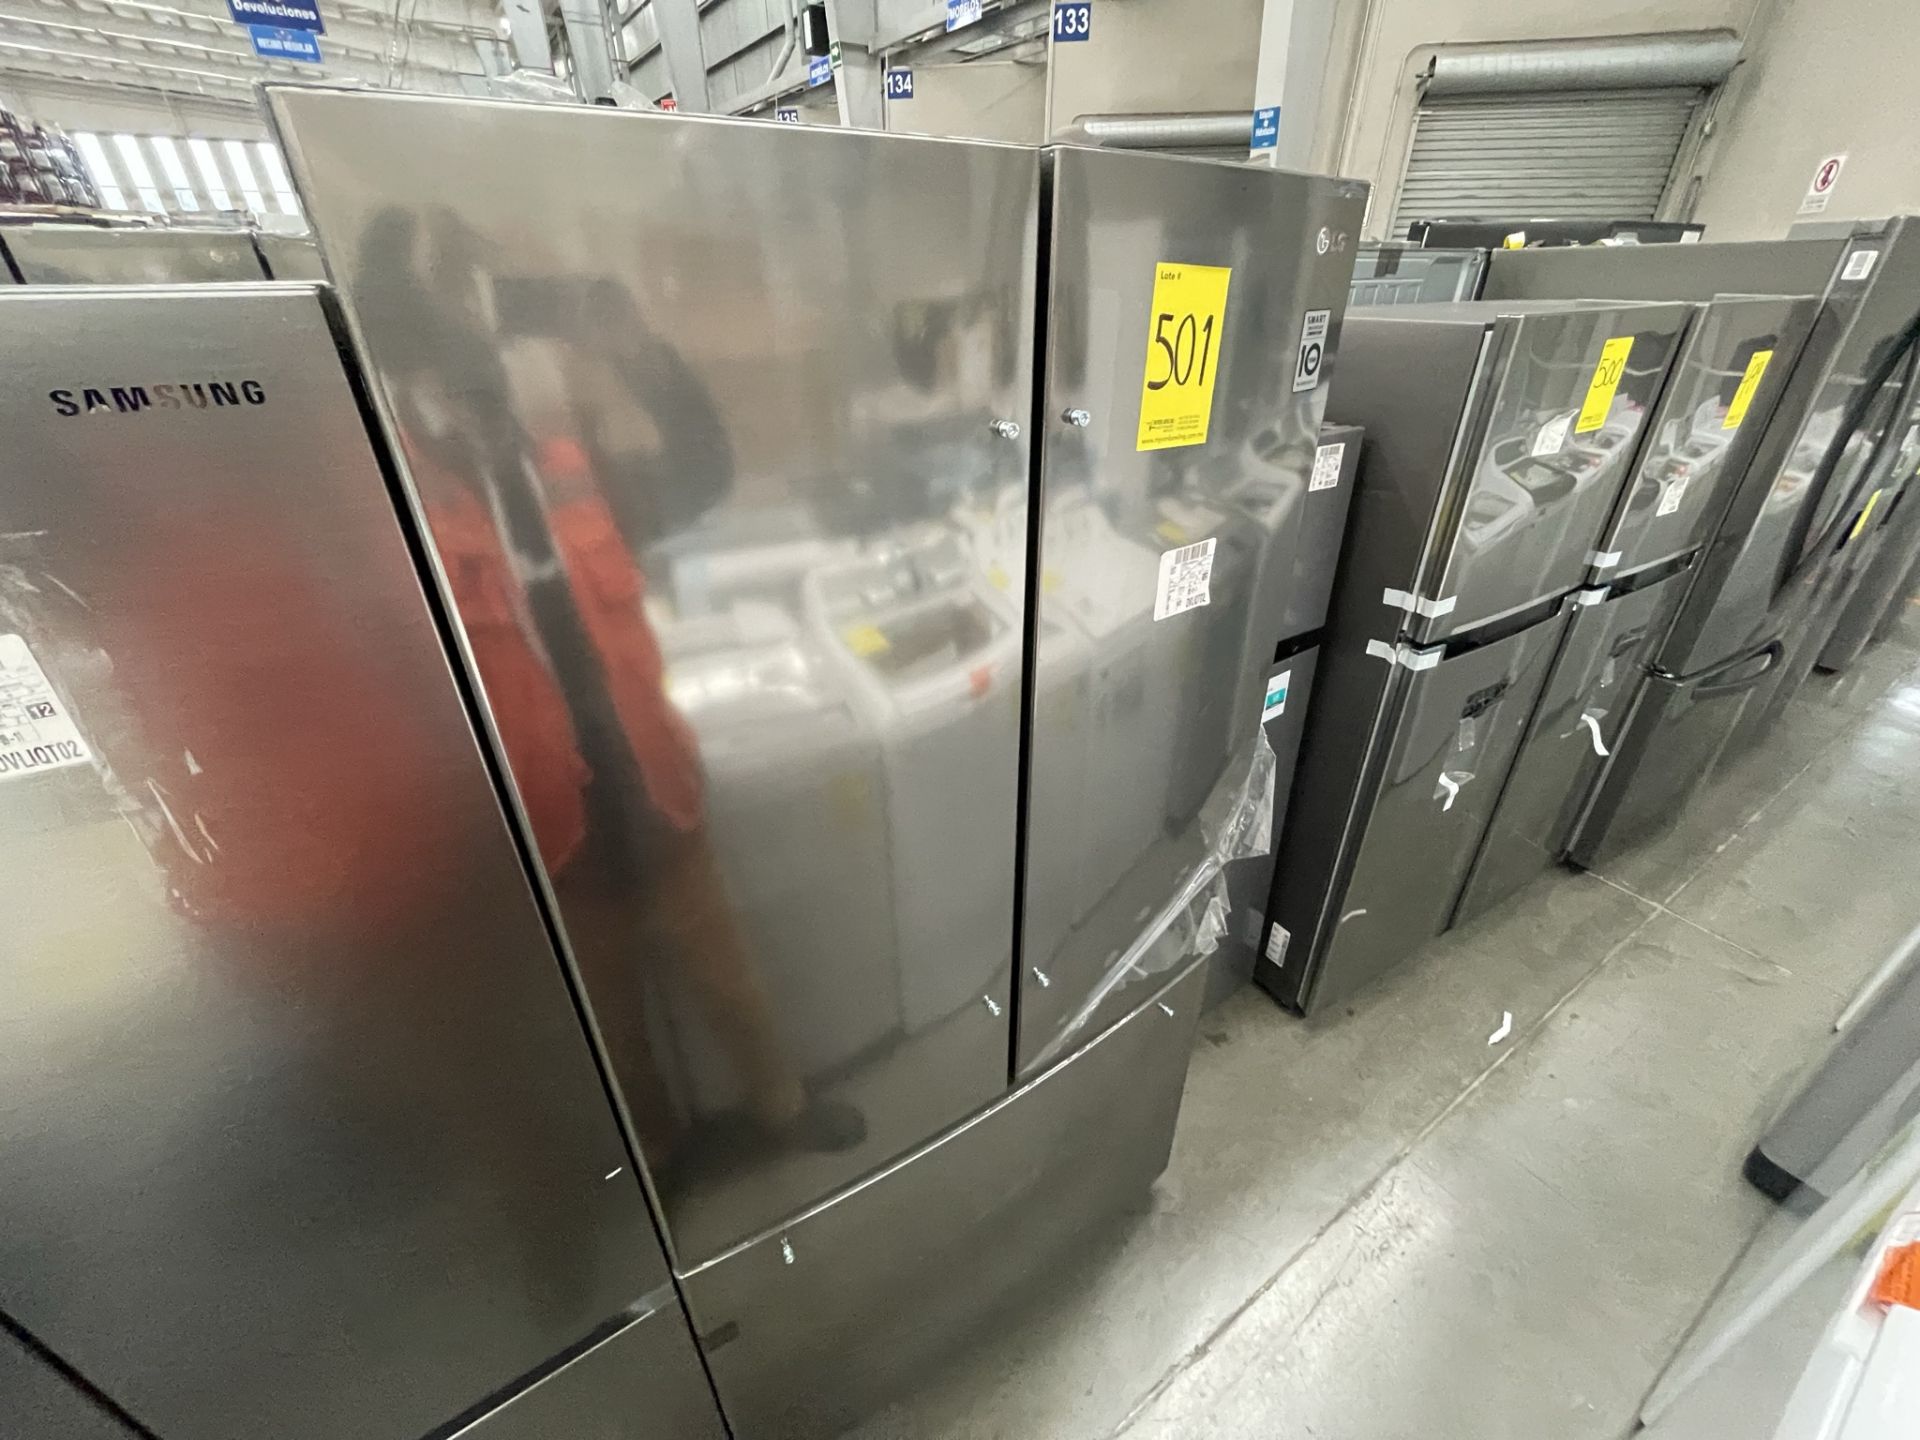 (EQUIPO NUEVO) Lote De 2 Refrigeradores Contiene: 1 Refrigerador Marca LG, Modelo GM29BP, Serie208M - Image 6 of 16